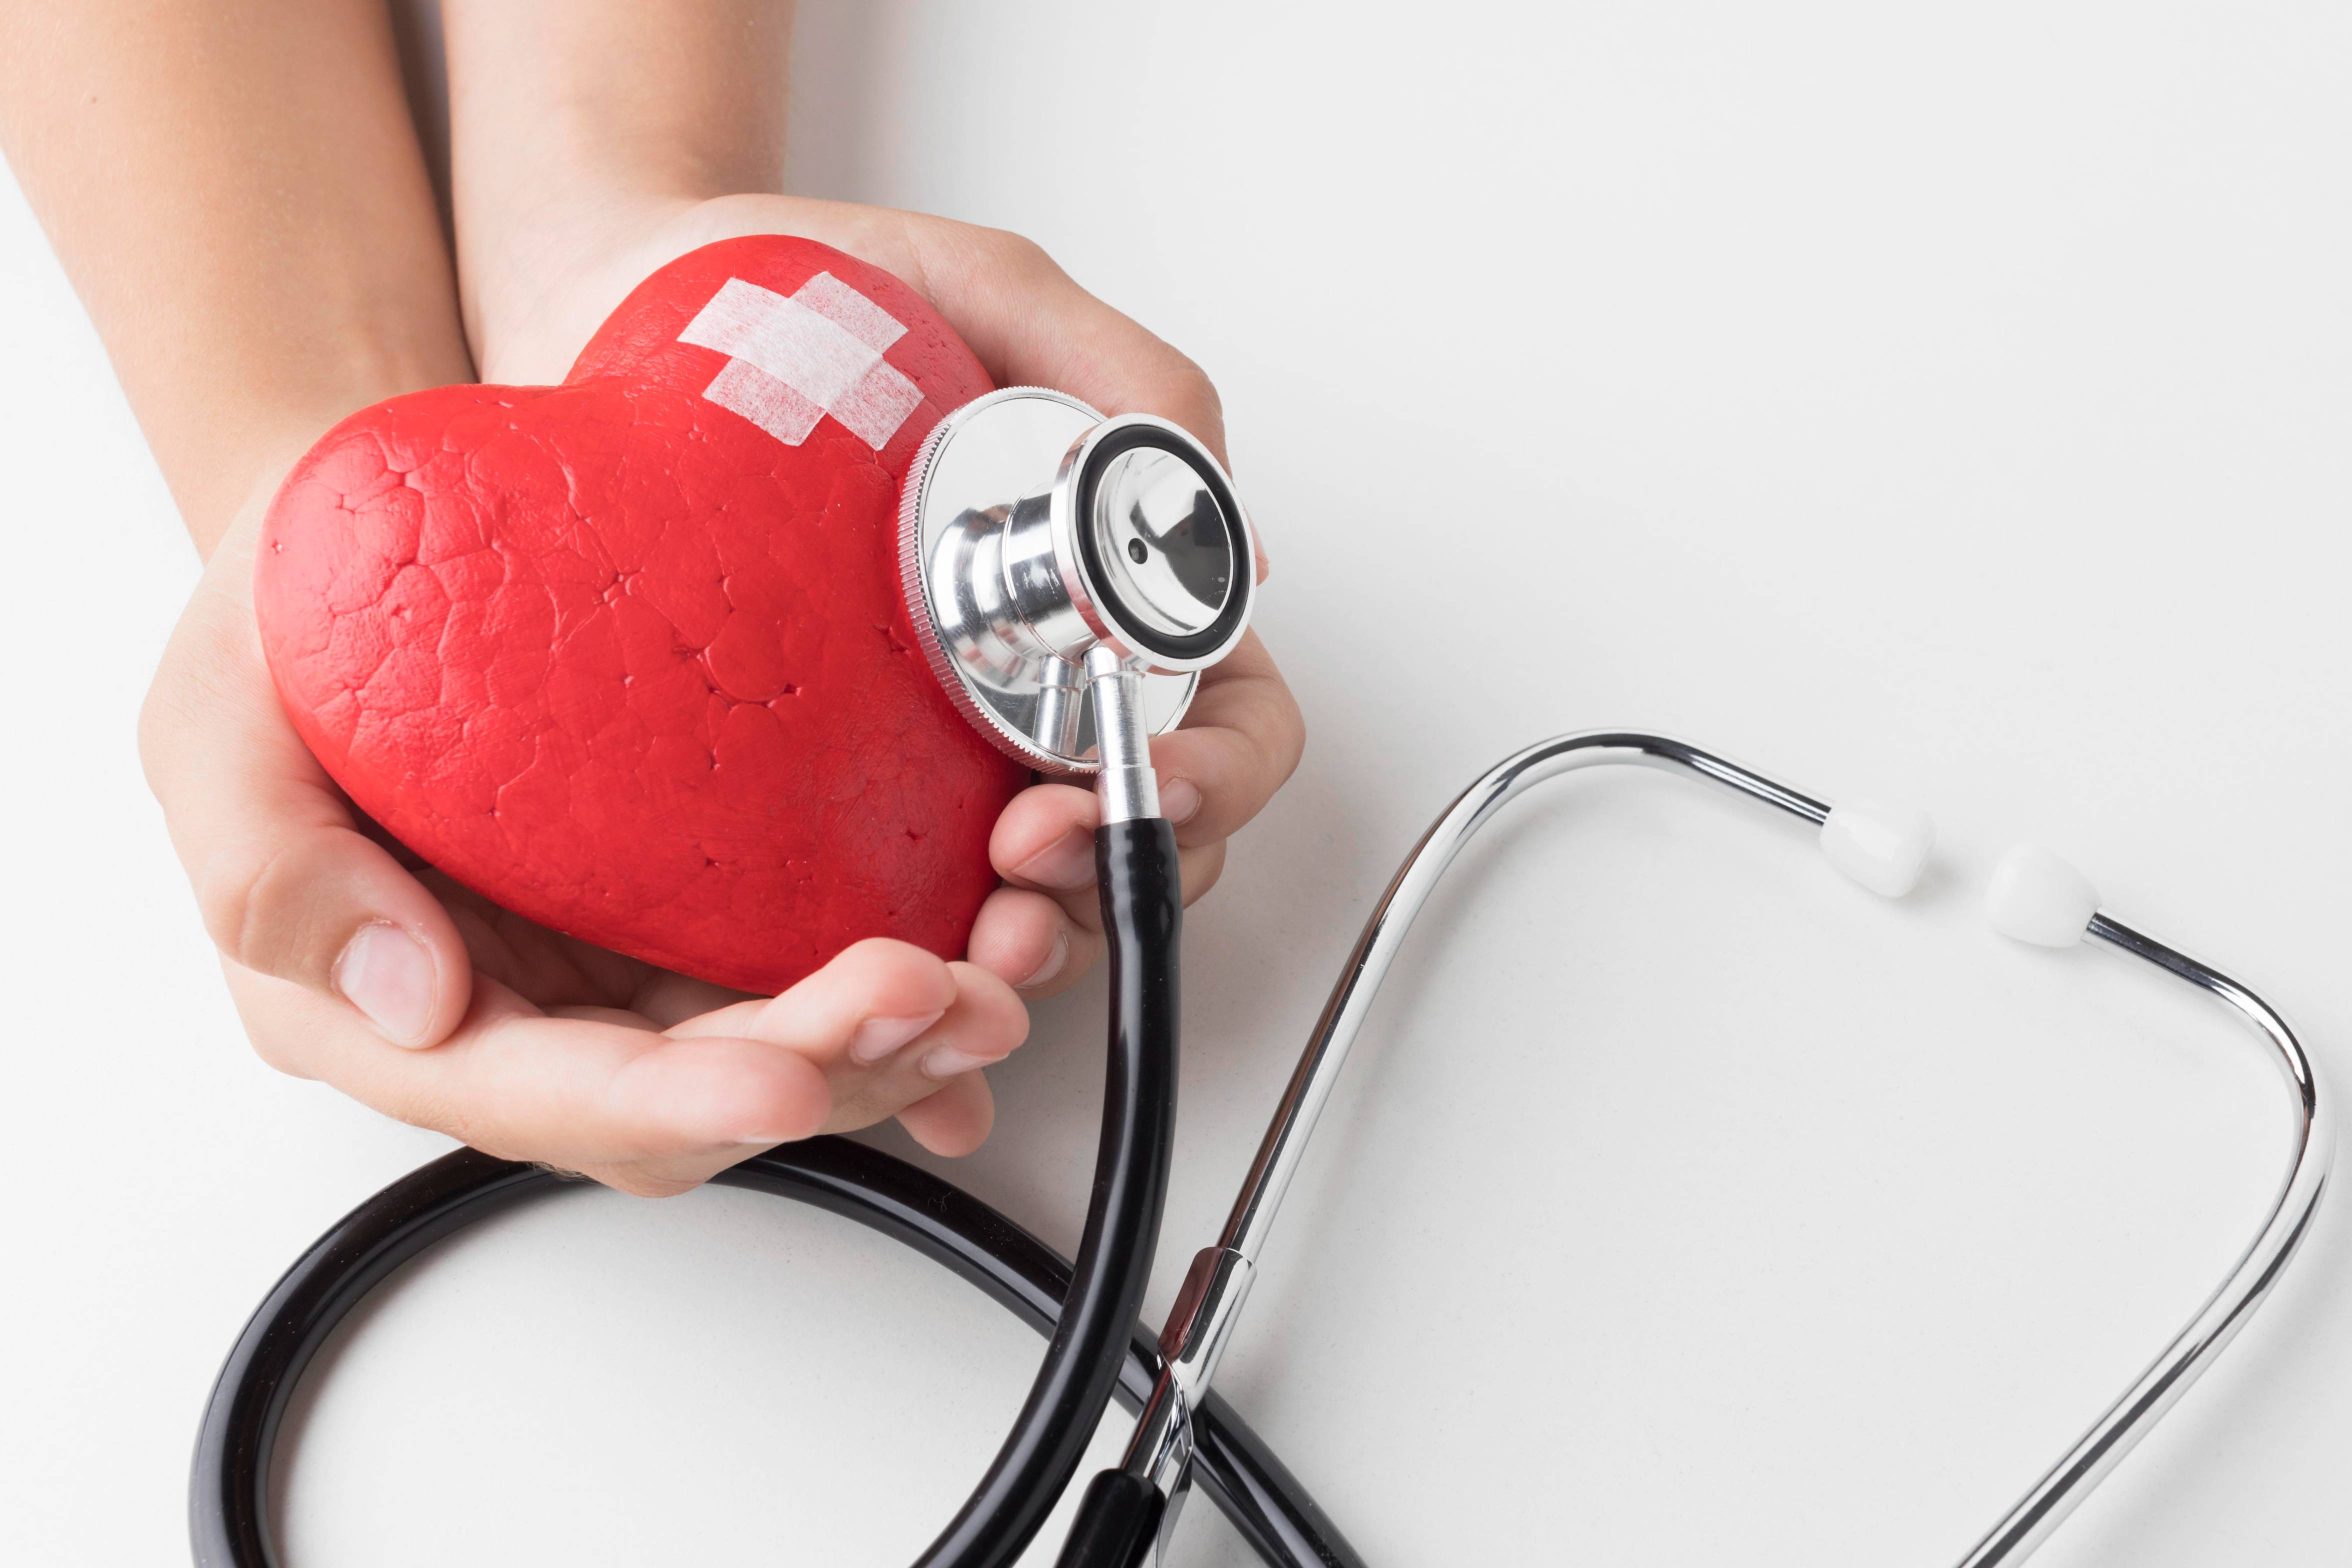 El 90% de las enfermedades cardíacas se puede prevenir con una dieta más saludable, ejercicio regular y no fumar